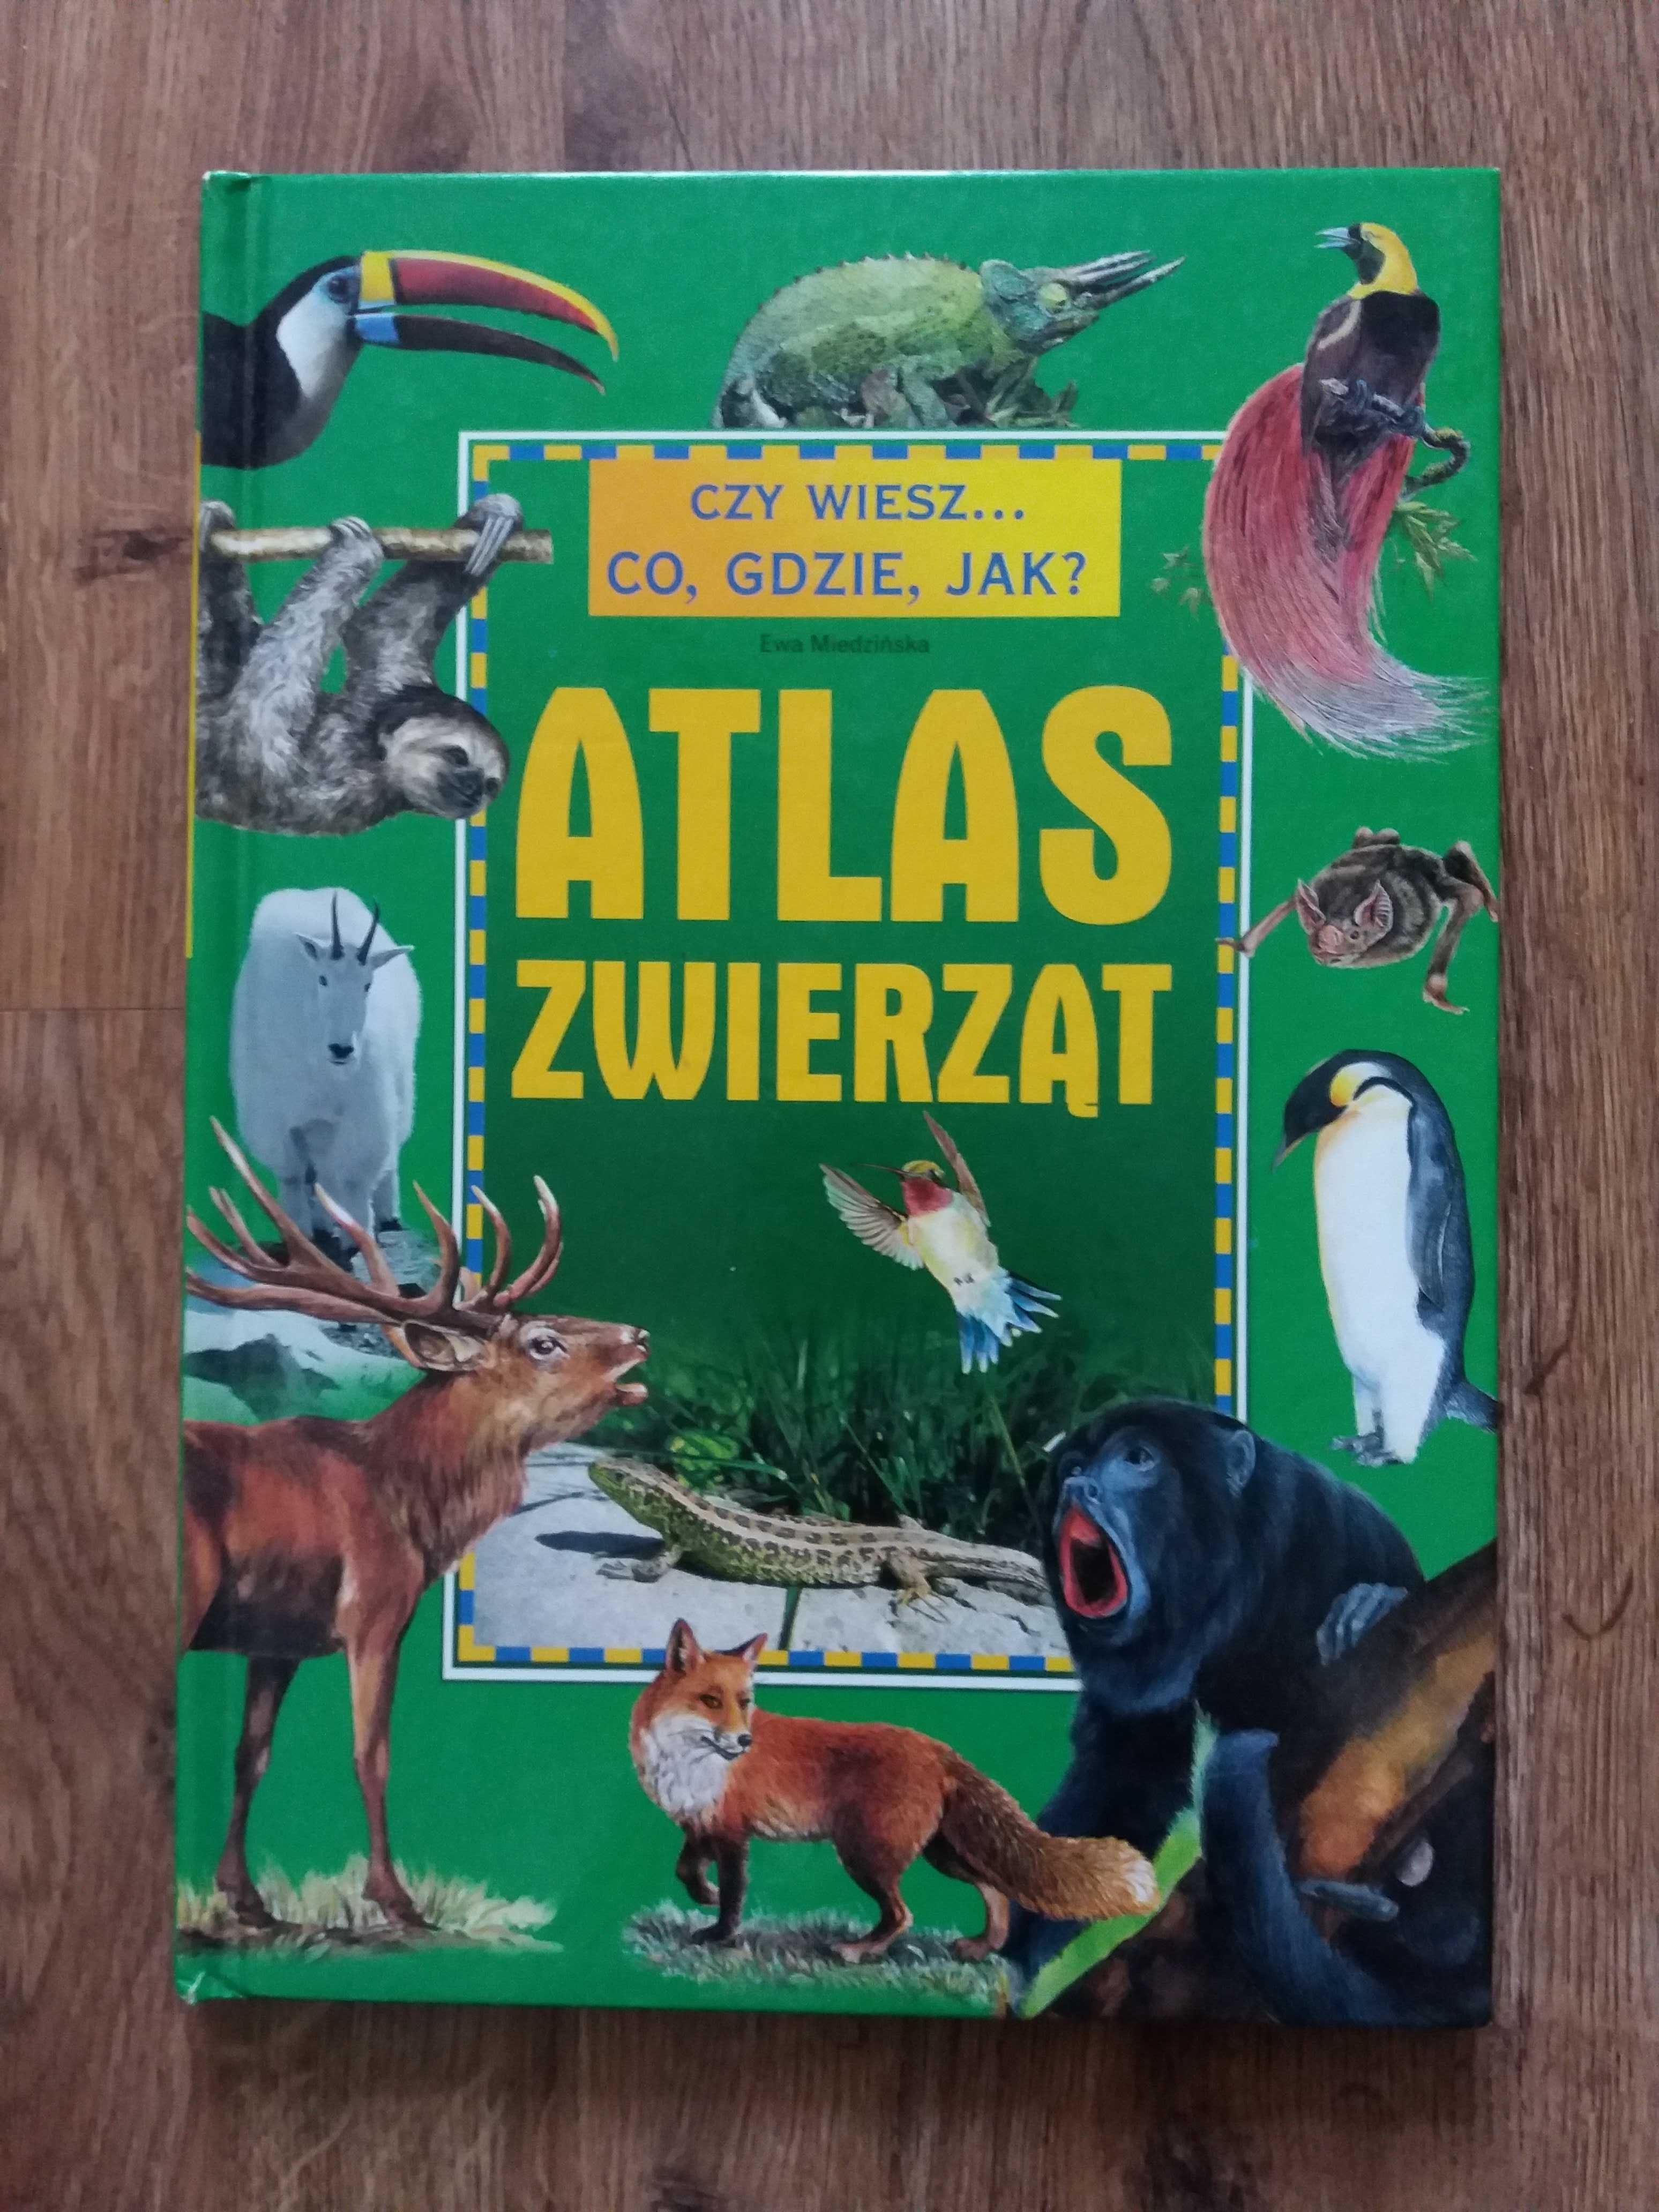 Atlas Zwierząt z serii Czy wiesz Co, gdzie, jak? książka dla dzieci